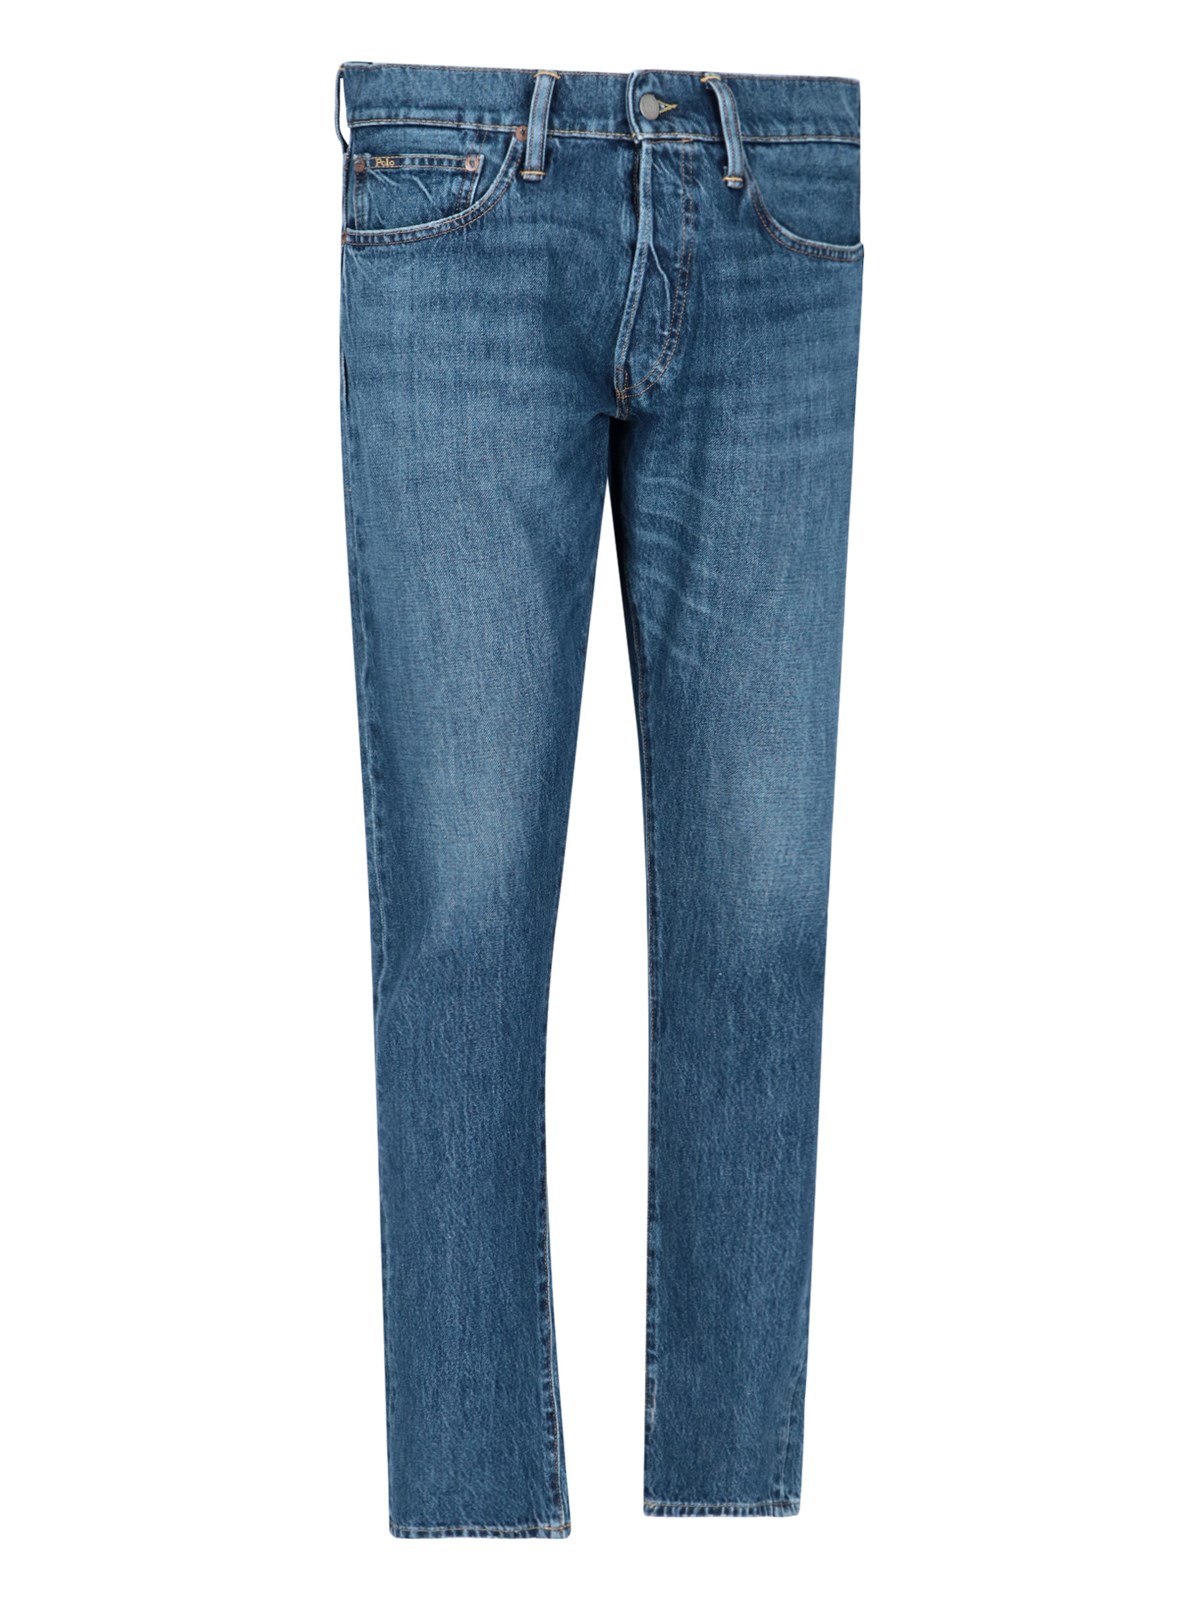 Denim & Supply by Ralph Lauren Bogner Womens Jeans Pants Blue Size 26 28 Lot 2